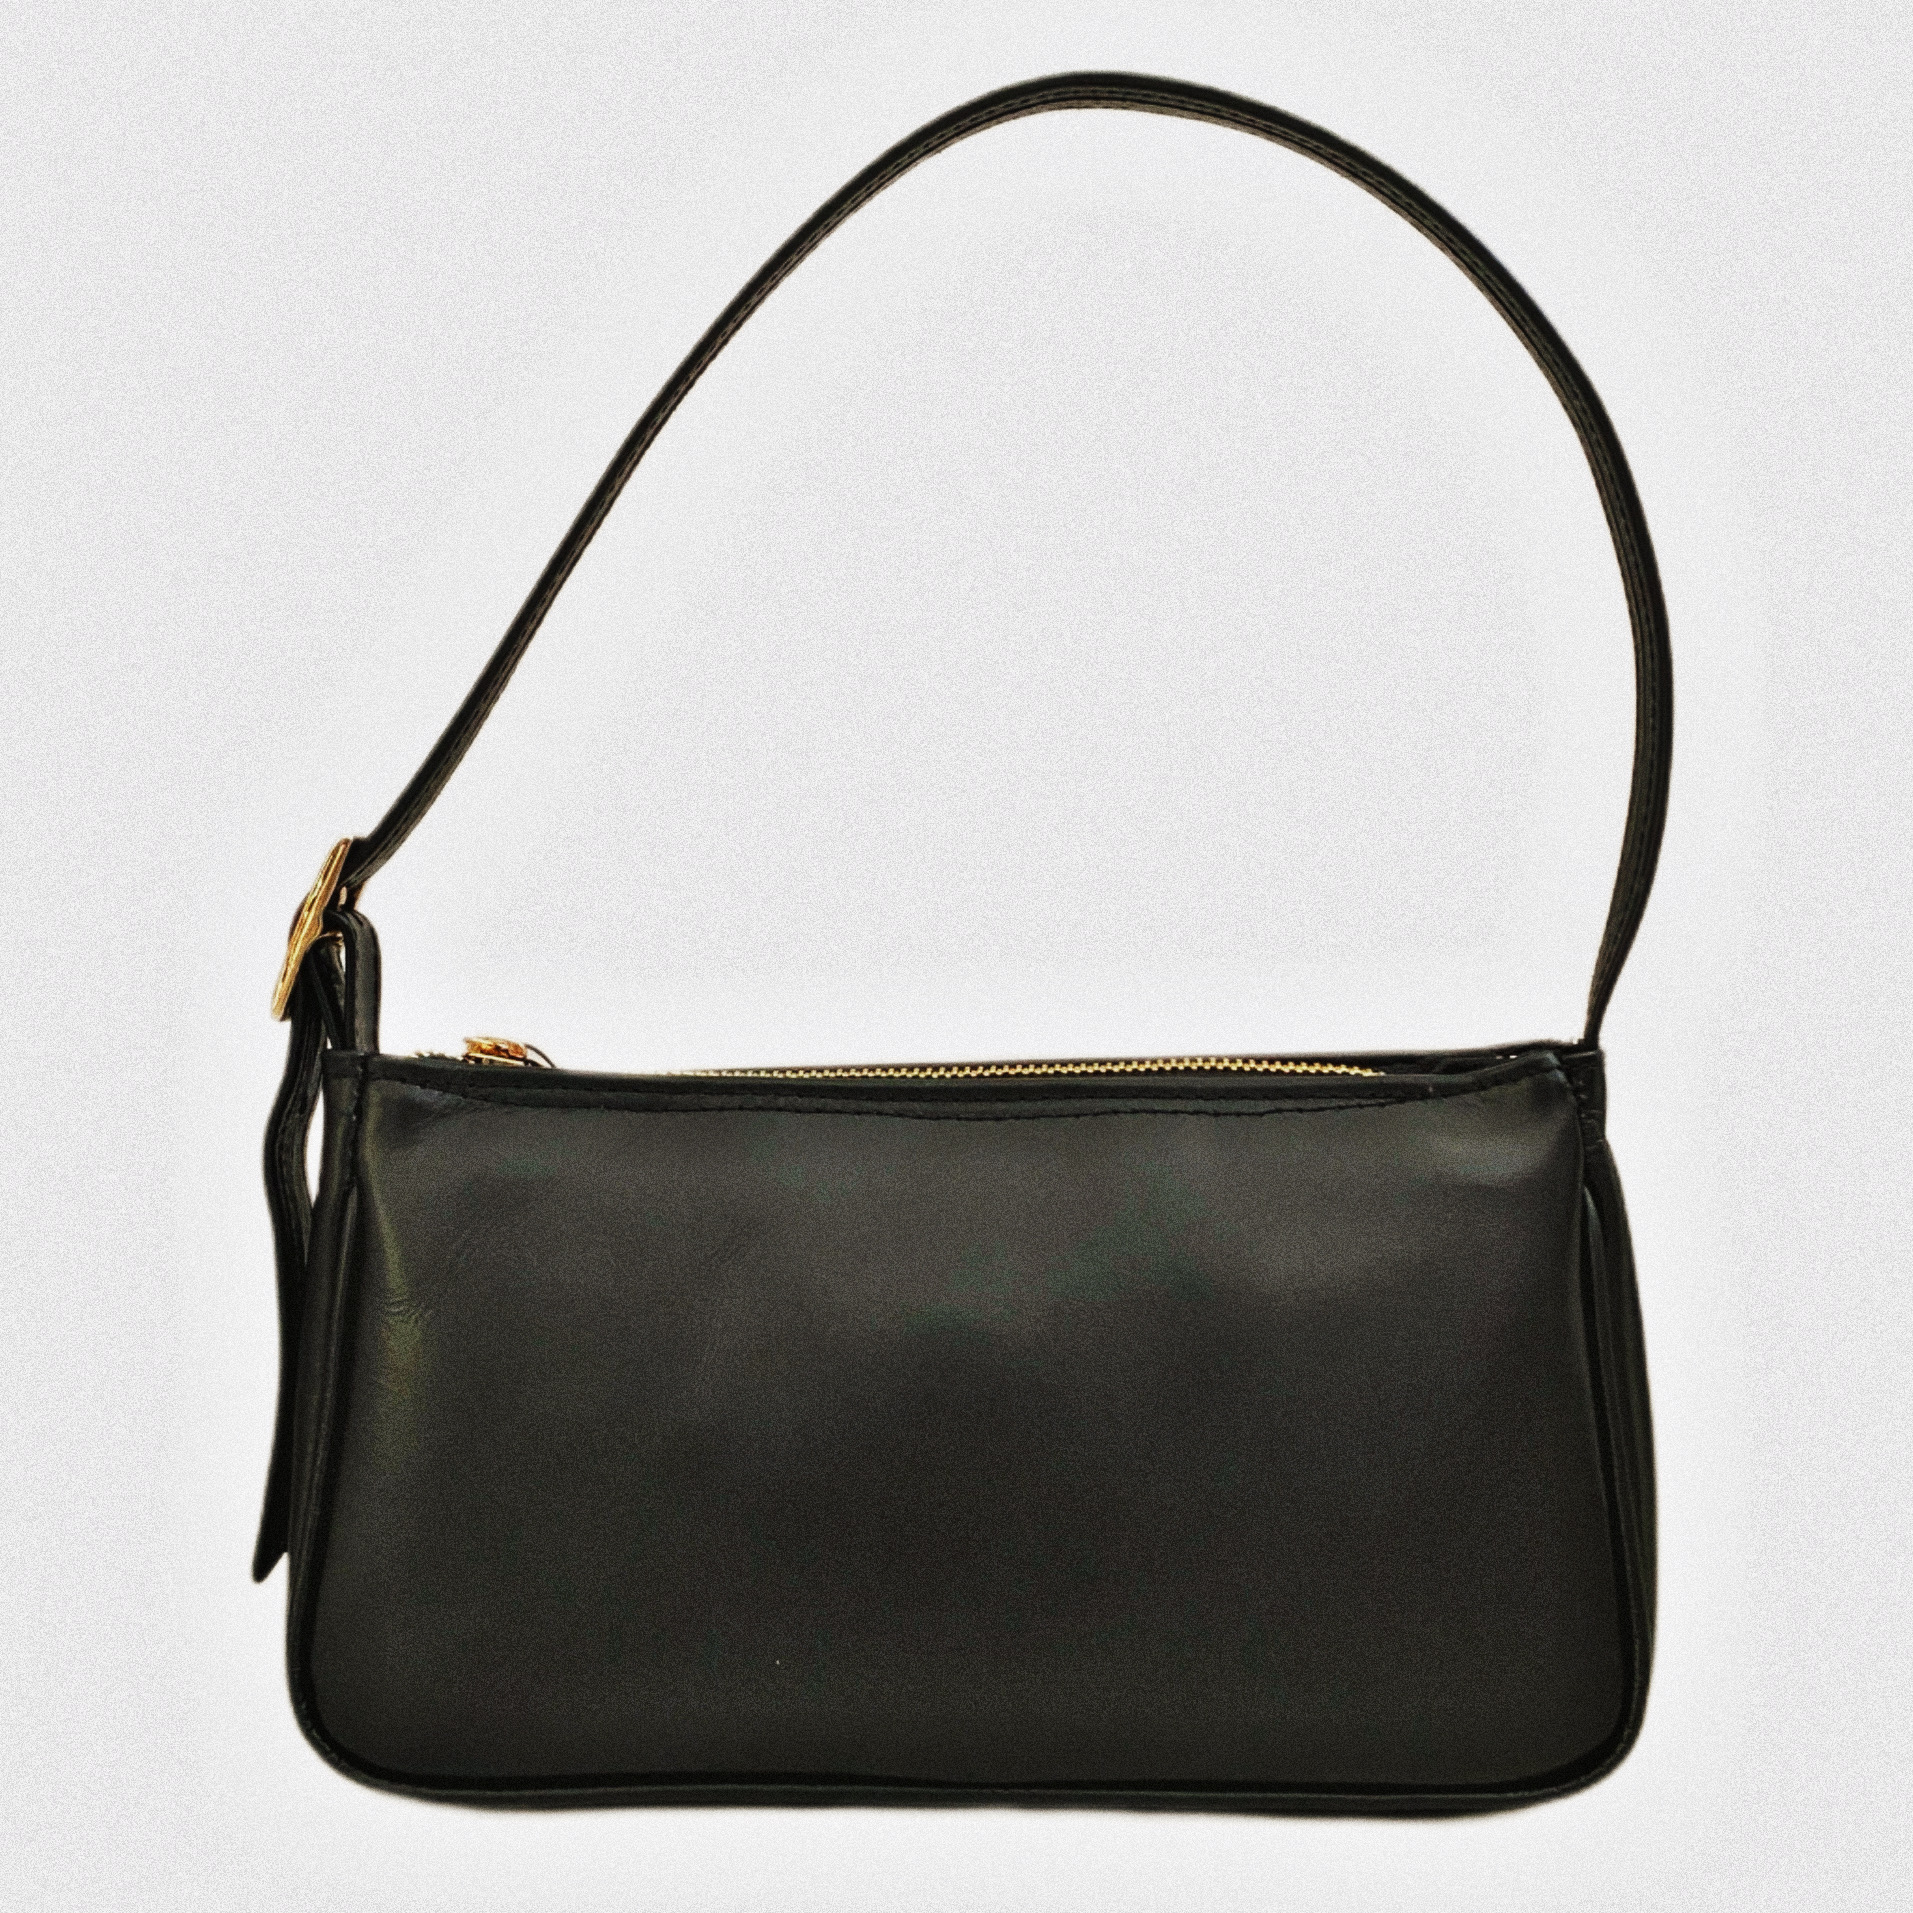 Clic Jewels Shoulder bag minimal black smooth genuine leather